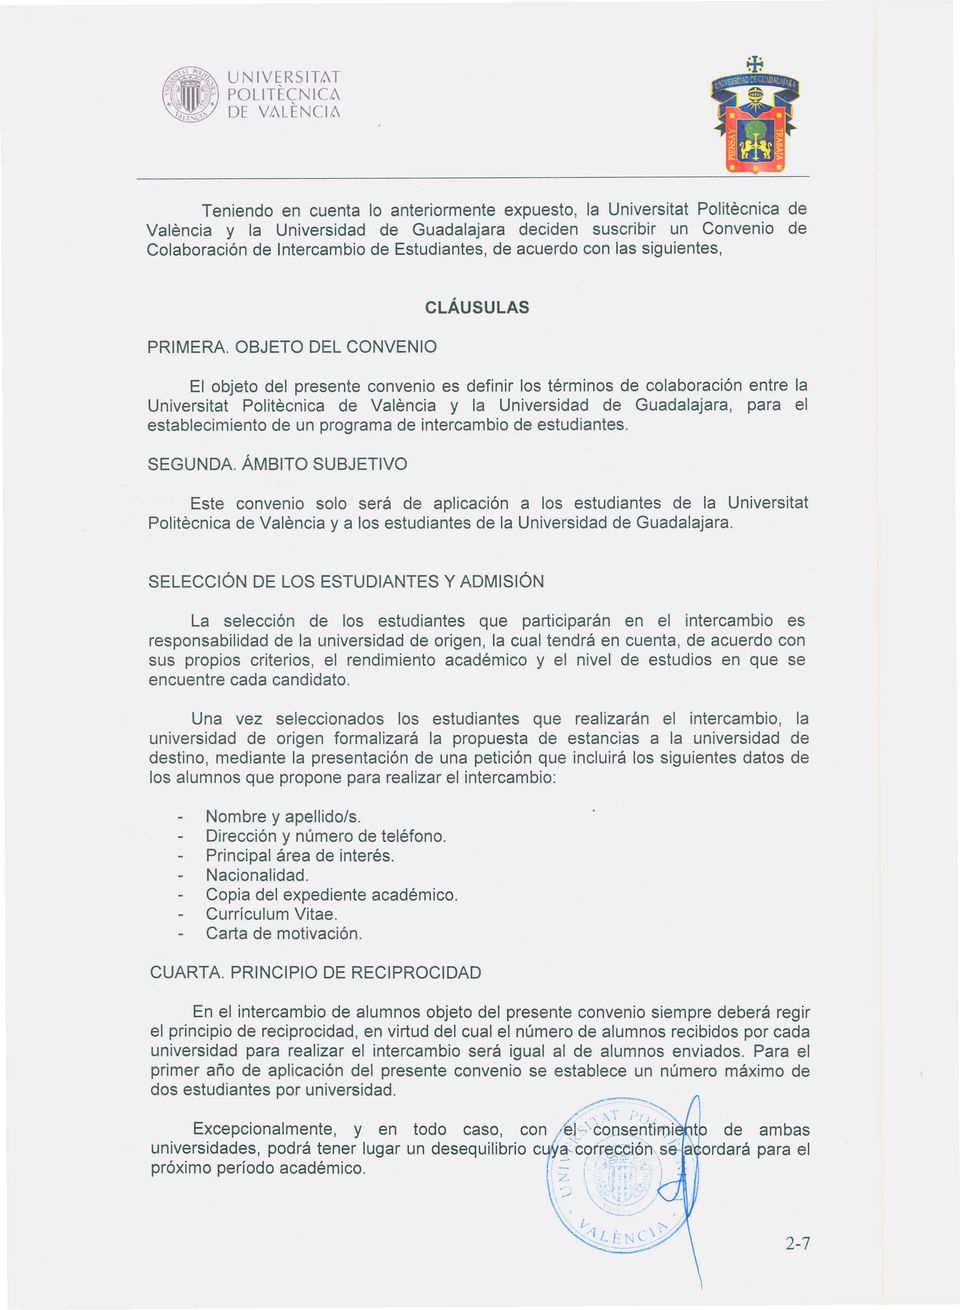 acuerdo con las siguientes, El objeto del presente convenio es definir los términos de colaboración entre la Universitat Politecnica de Valencia y la Universidad de Guadalajara, para el